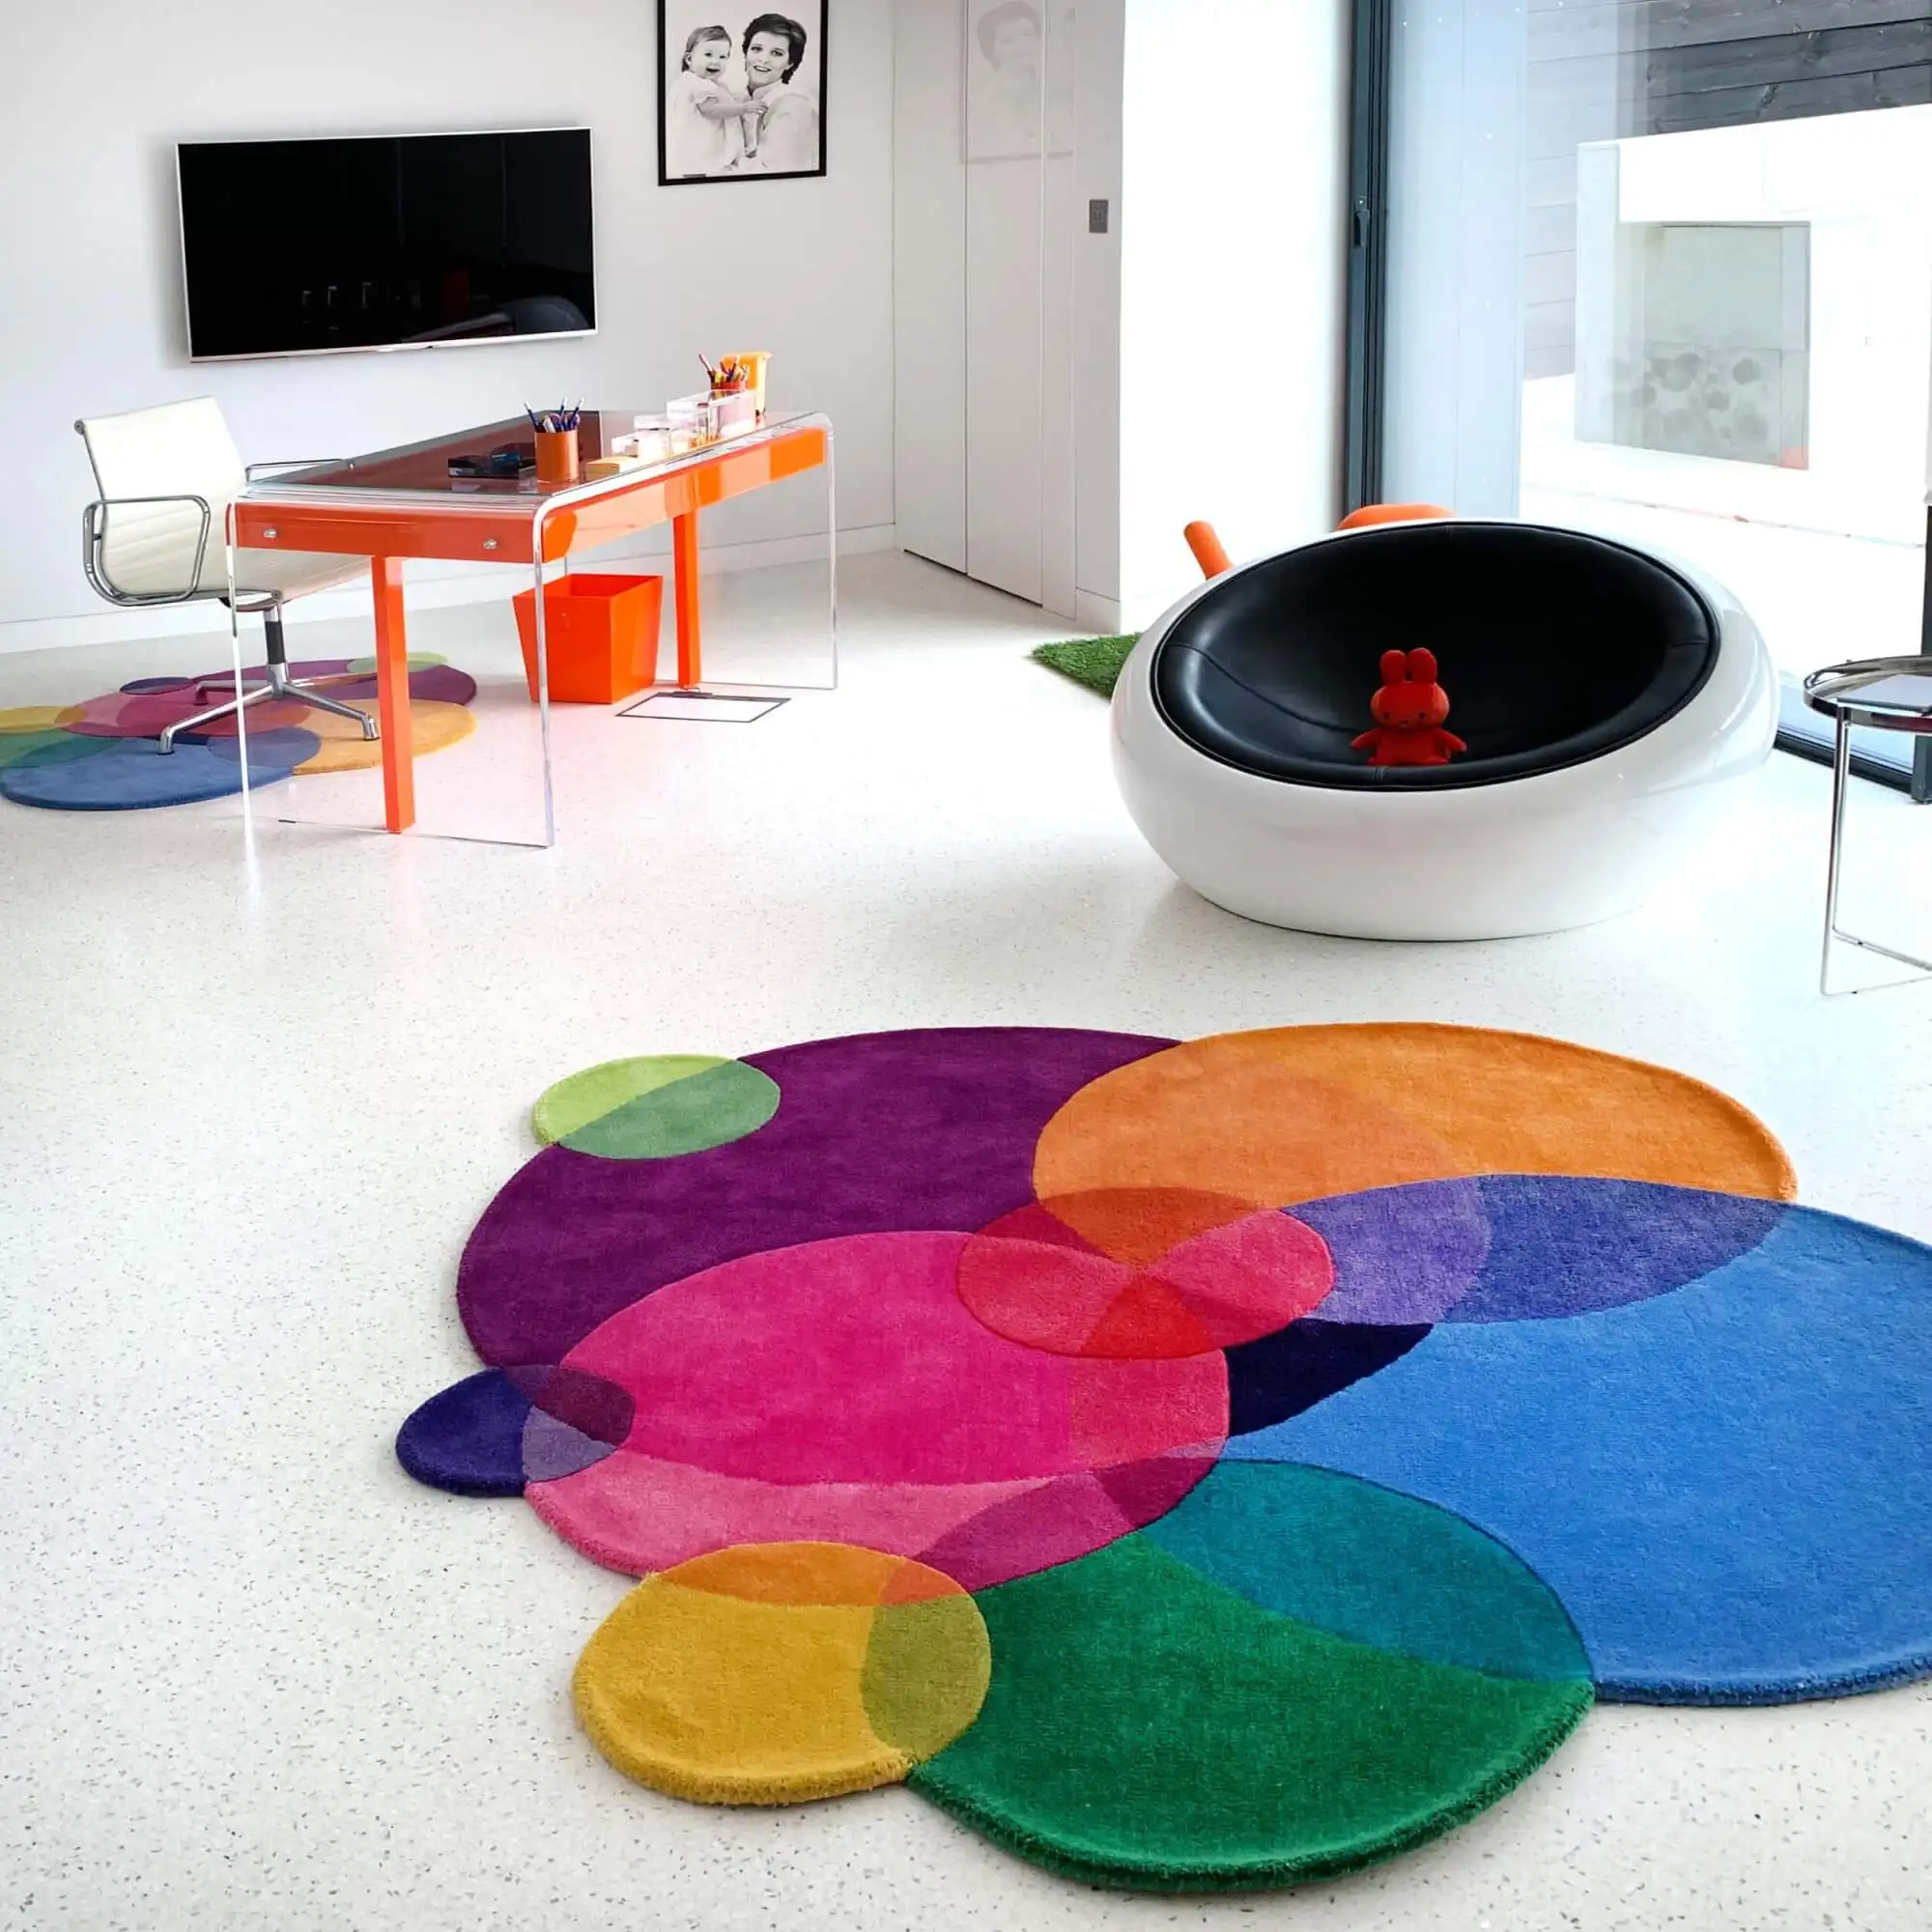 Luxus Home Center Graue Teppiche 3d Flauschige Teppiche für Wohnzimmer Amine Cartoon Area Rug